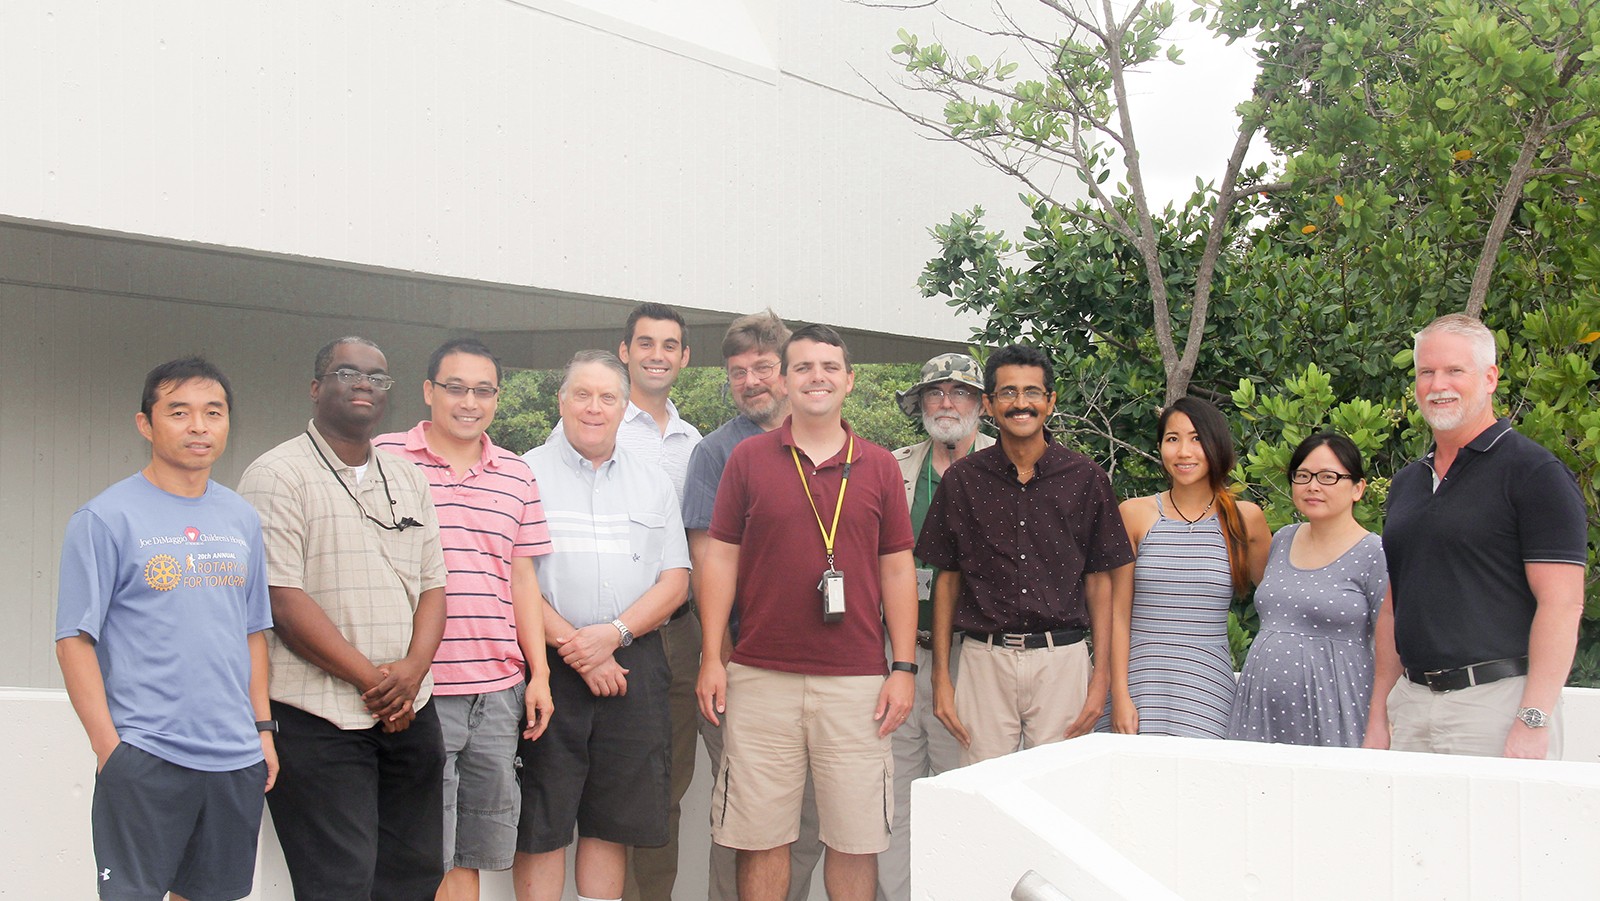 Foto de grupo de los científicos del modelo de huracanes del AOML. Crédito de la imagen: NOAA AOML.